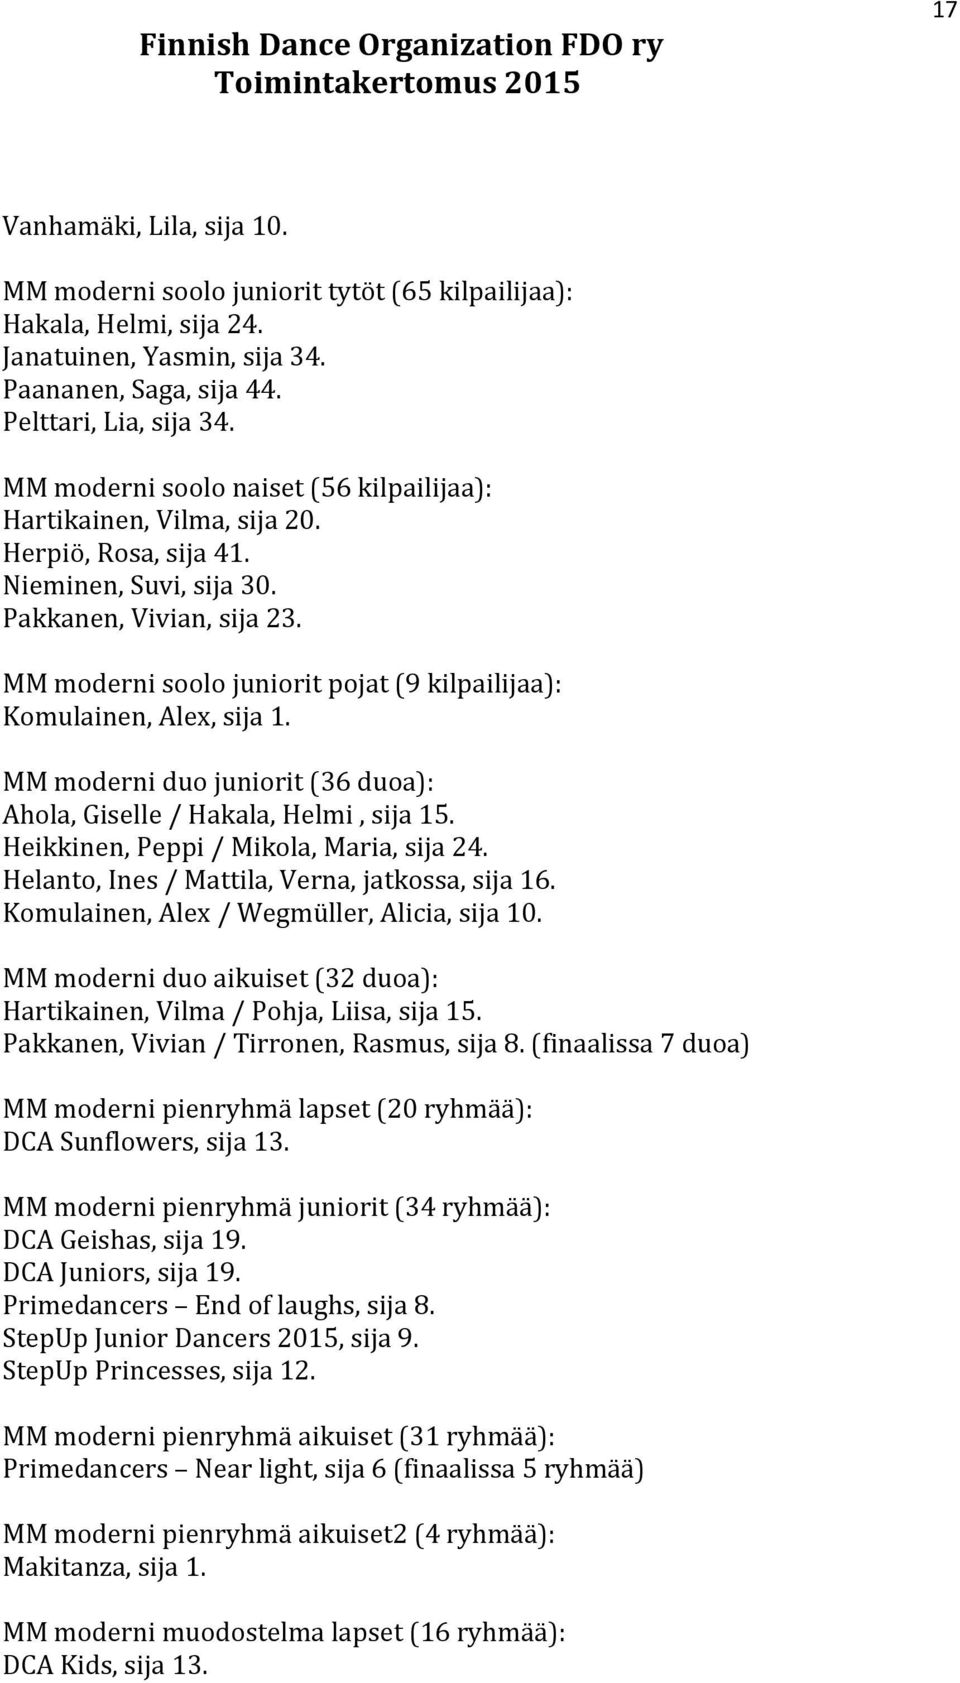 MM moderni soolo juniorit pojat (9 kilpailijaa): Komulainen, Alex, sija 1. MM moderni duo juniorit (36 duoa): Ahola, Giselle / Hakala, Helmi, sija 15. Heikkinen, Peppi / Mikola, Maria, sija 24.